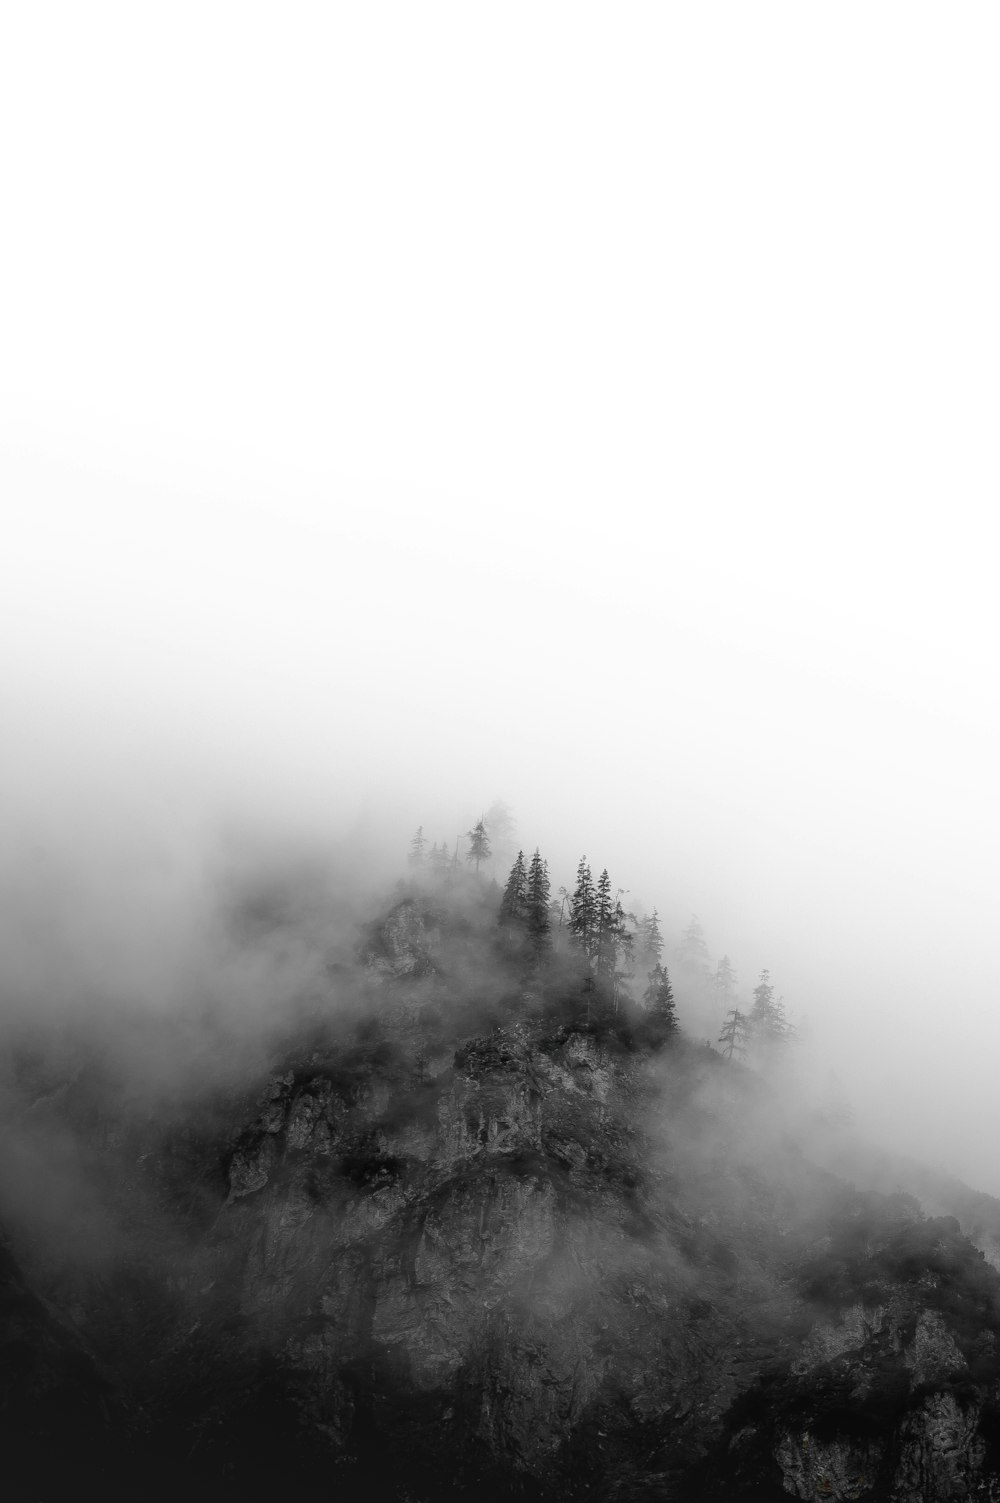 구름으로 덮인 나무의 그레이스케일 사진